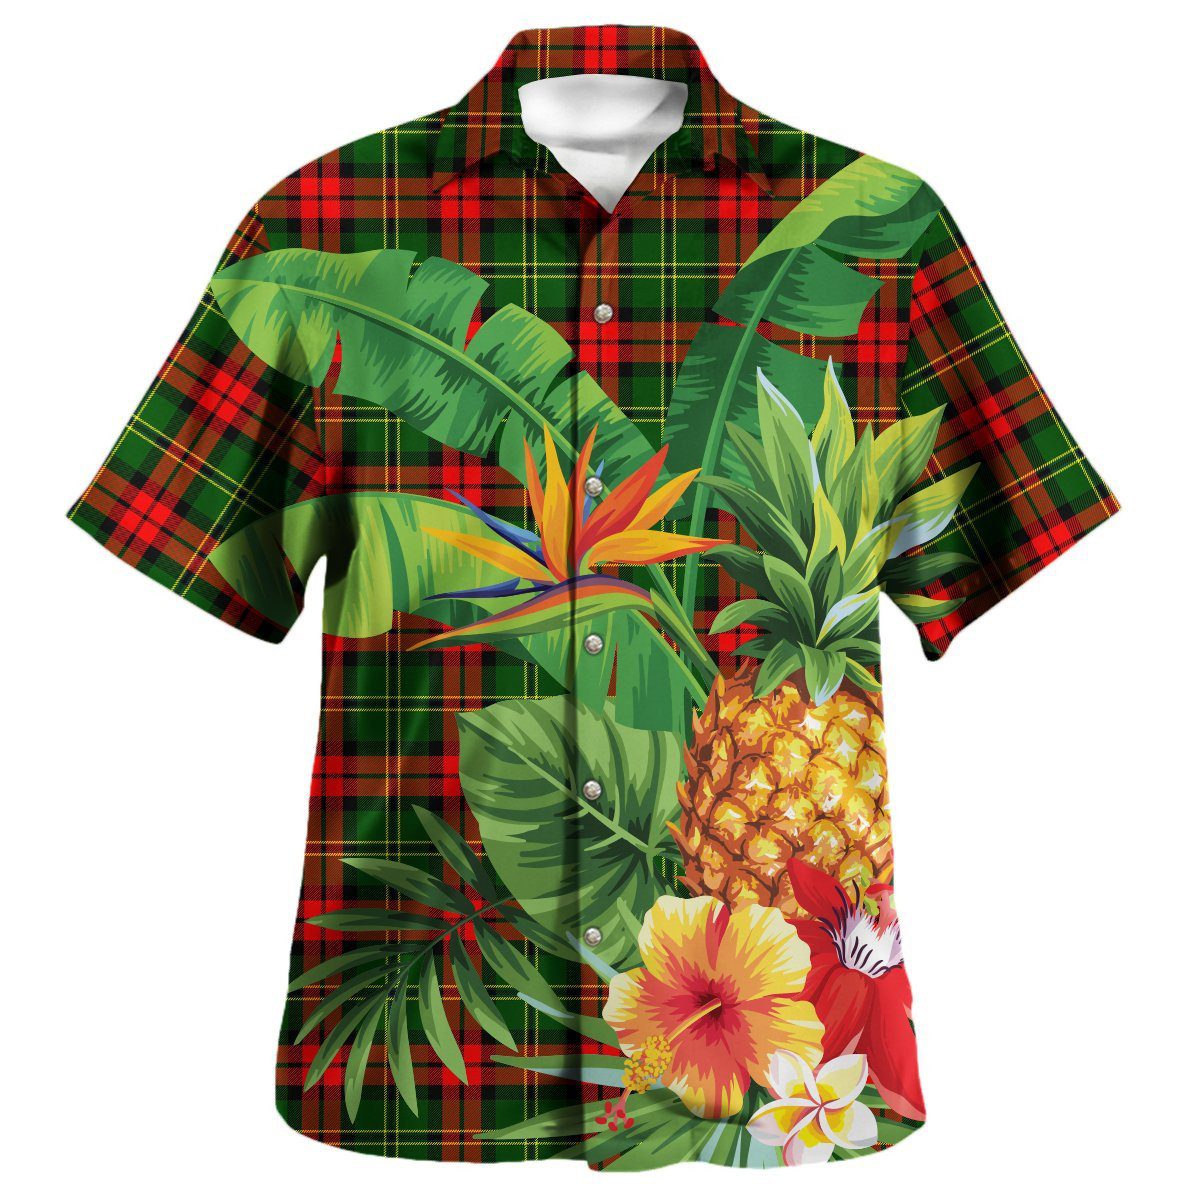 Blackstock Tartan Aloha Shirt version 2